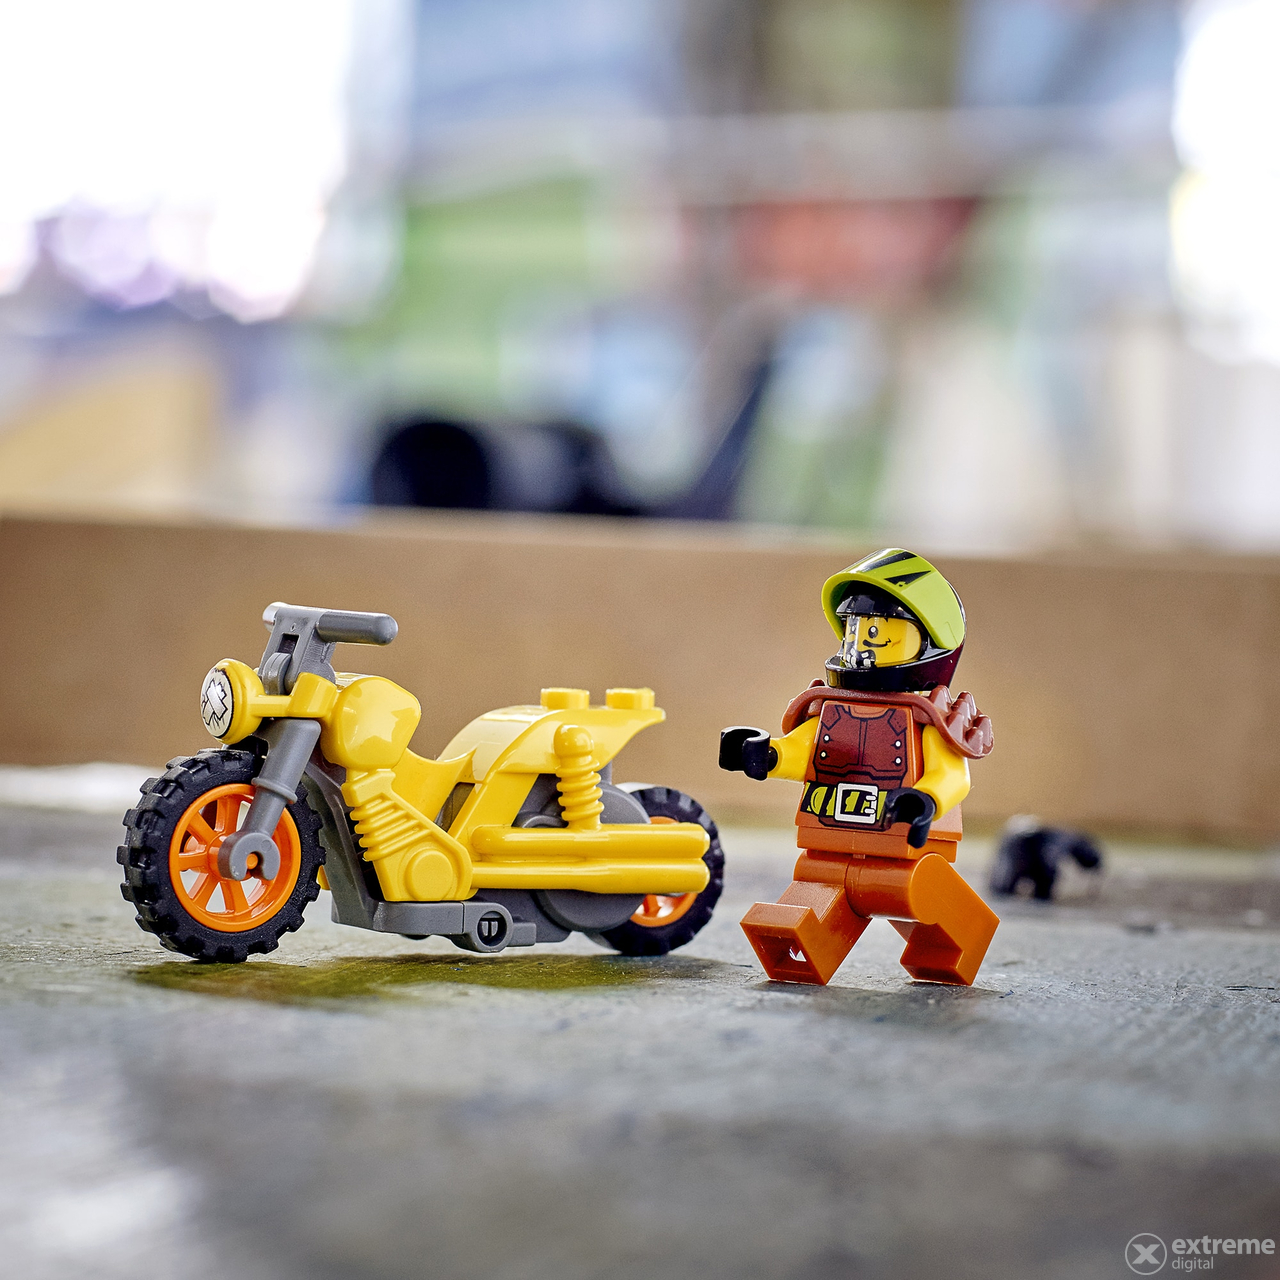 LEGO® City Stuntz 60297 Demoliční kaskadérská motorka